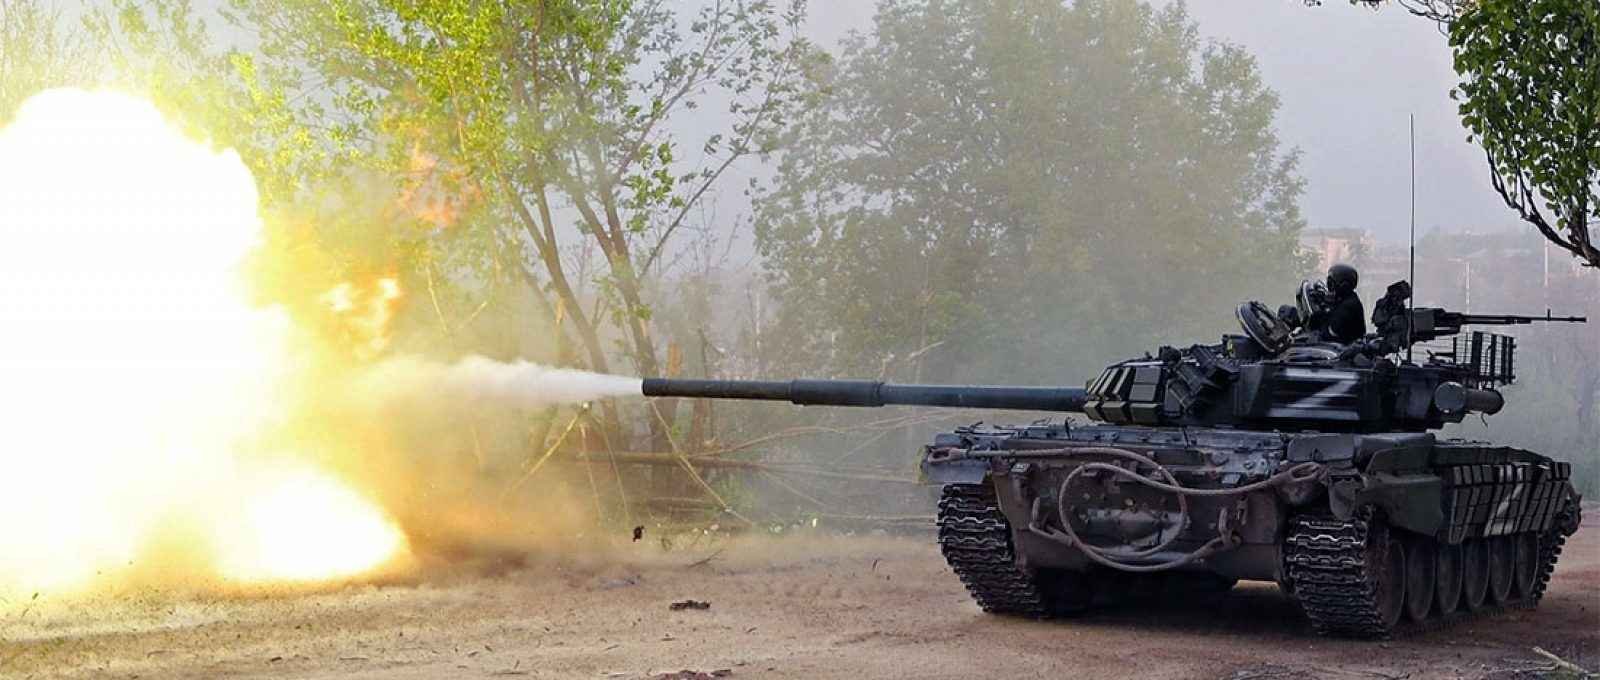 Tropas pró-Rússia disparam de um tanque durante combates no conflito Rússia-Ucrânia perto da siderúrgica Azovstal em Mariupol, no sul da Ucrânia, em 5 de maio de 2022 (Alexander Ermochenko/Reuters).